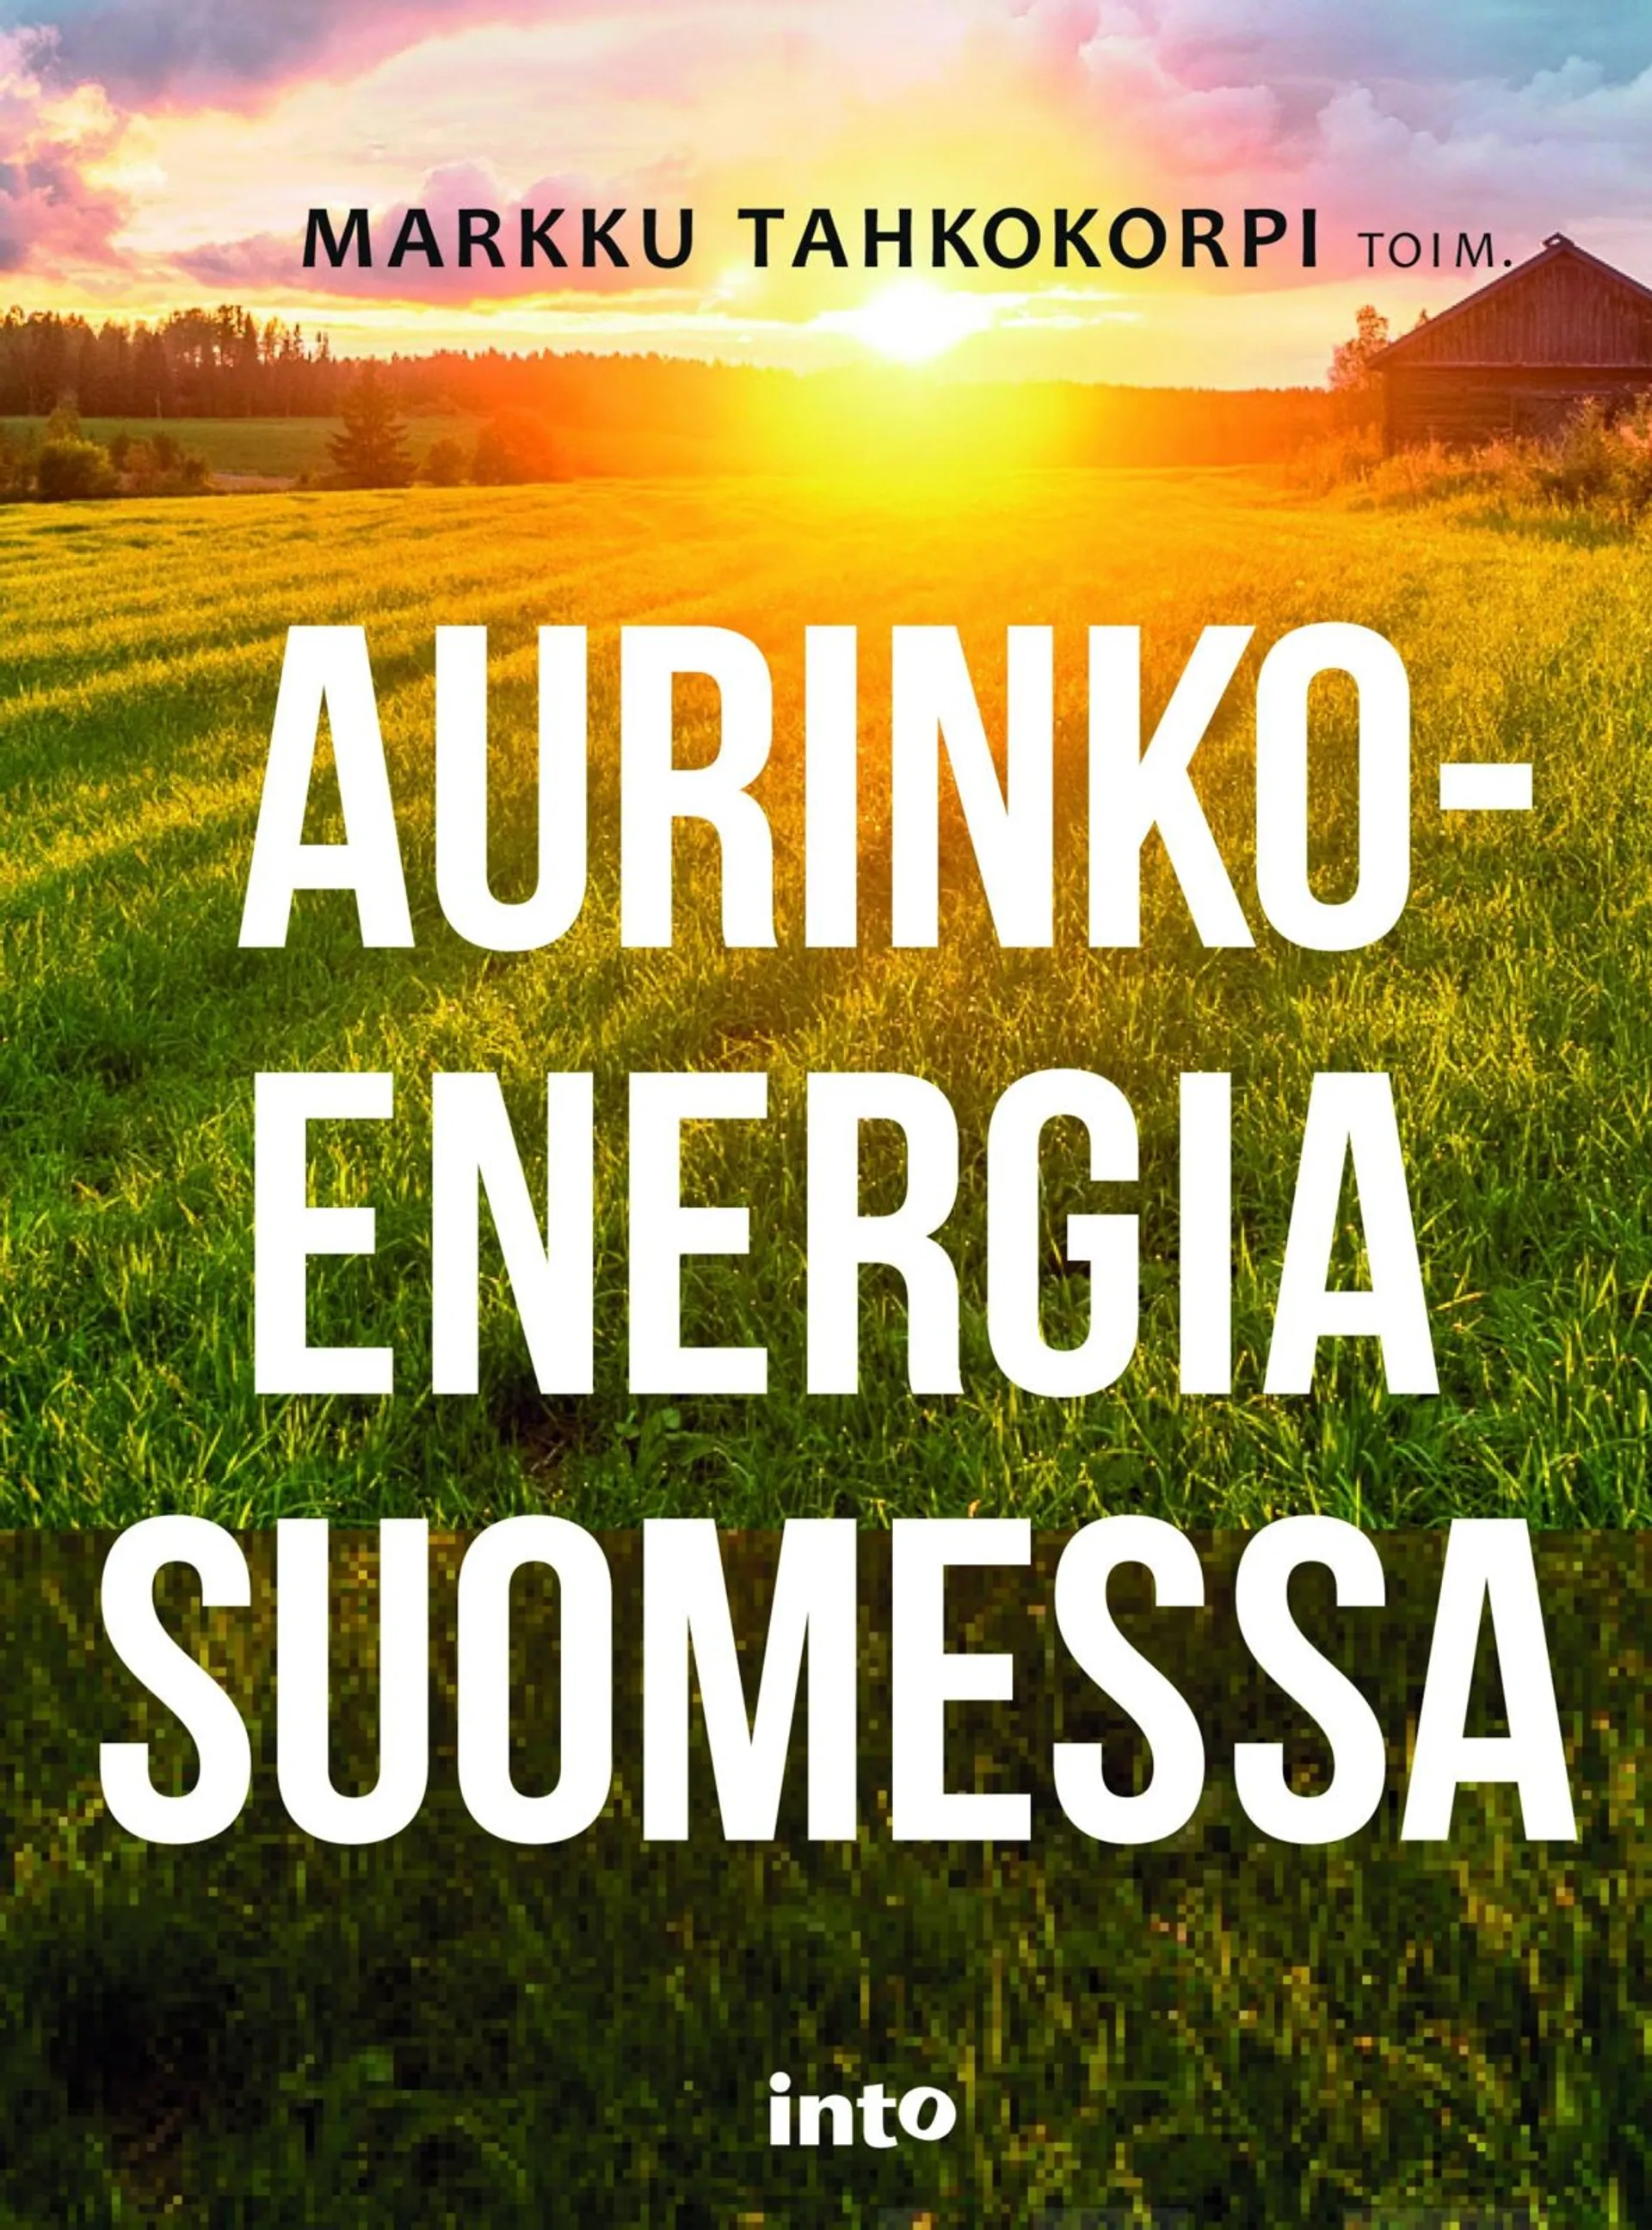 Aurinkoenergia Suomessa